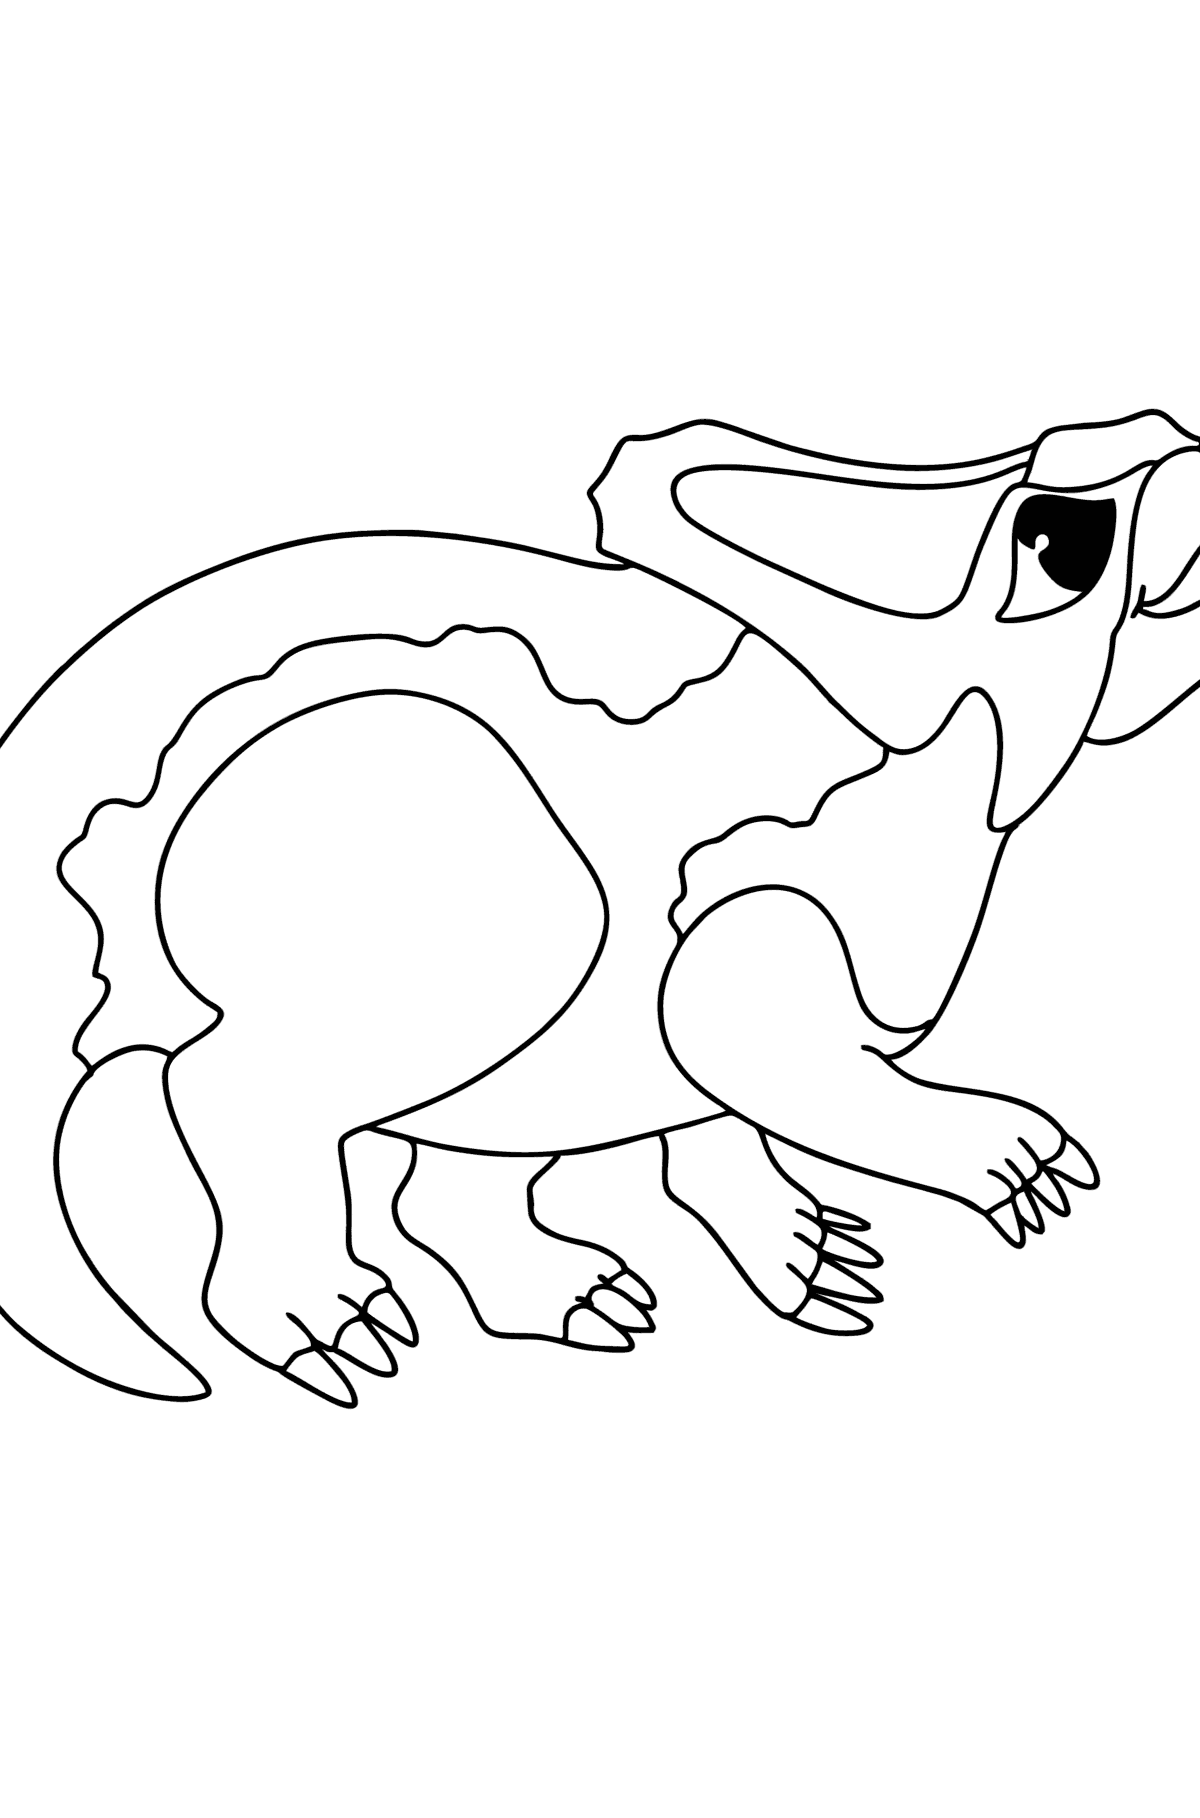 Tegning til fargelegging protoceratops - Tegninger til fargelegging for barn